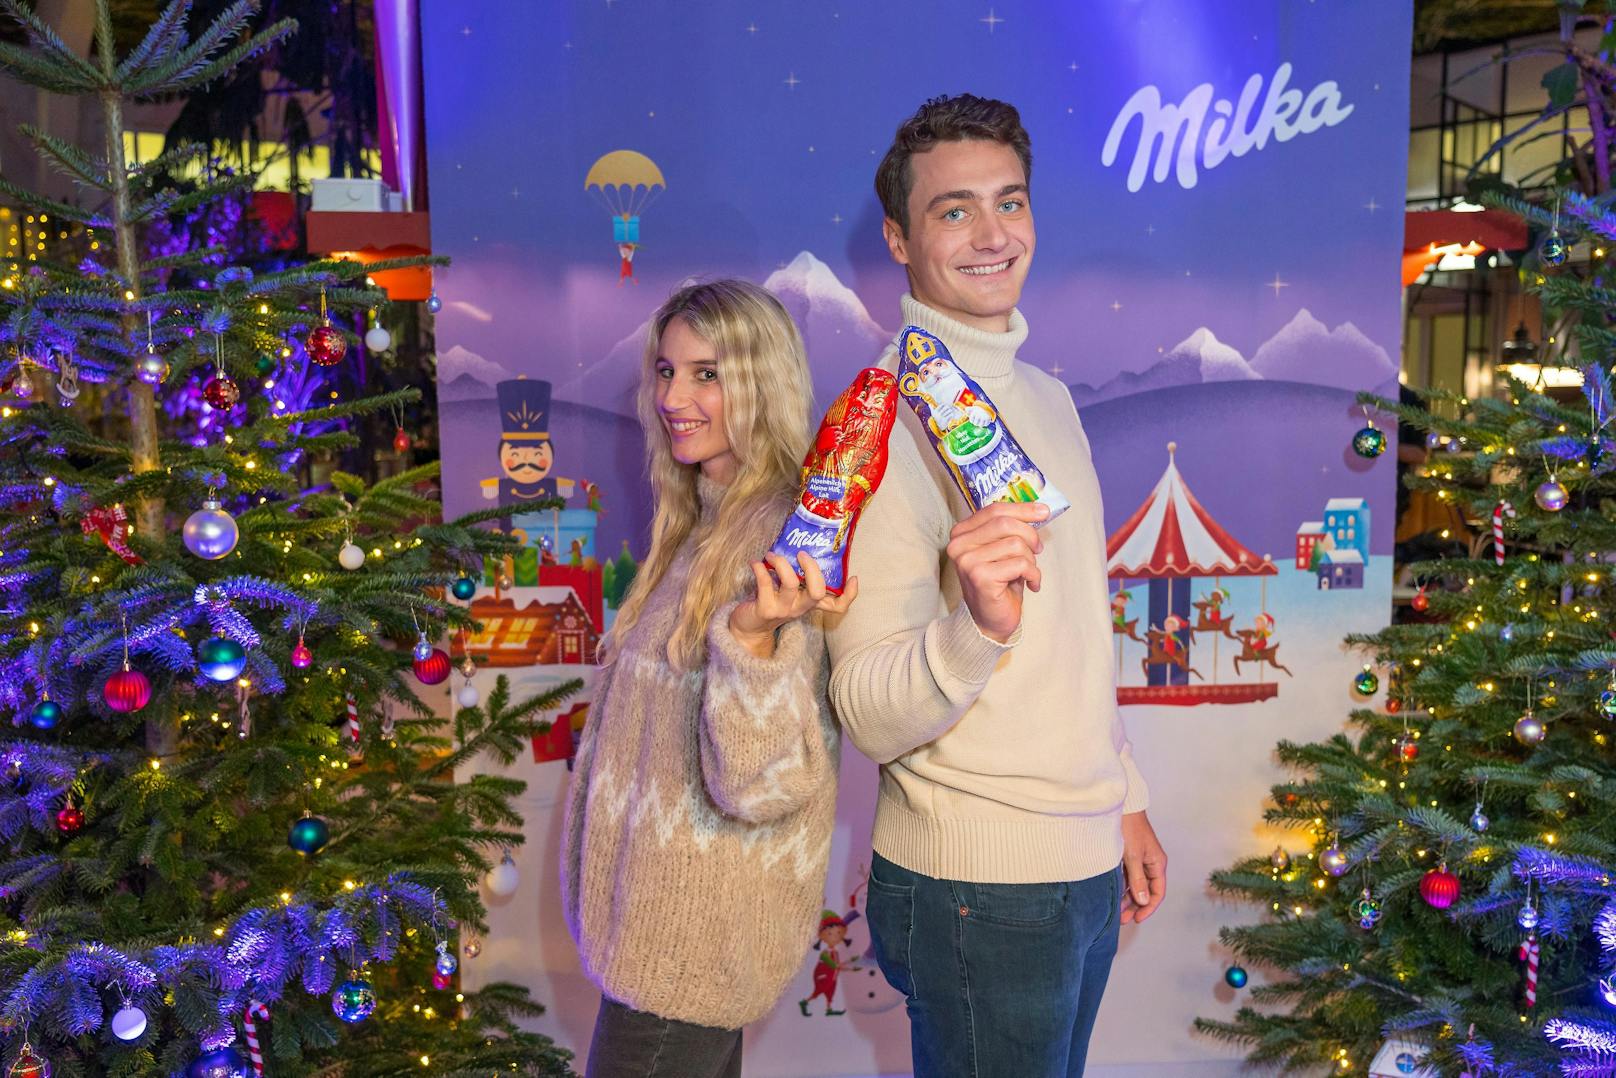 Die Snowboard-Stars Anna Gasser und Alessandro Hämmerle beim Milka Weihnachtsfest zugunsten der Make-a-wish-Foundation im Ponykarussell im Wiener Prater.